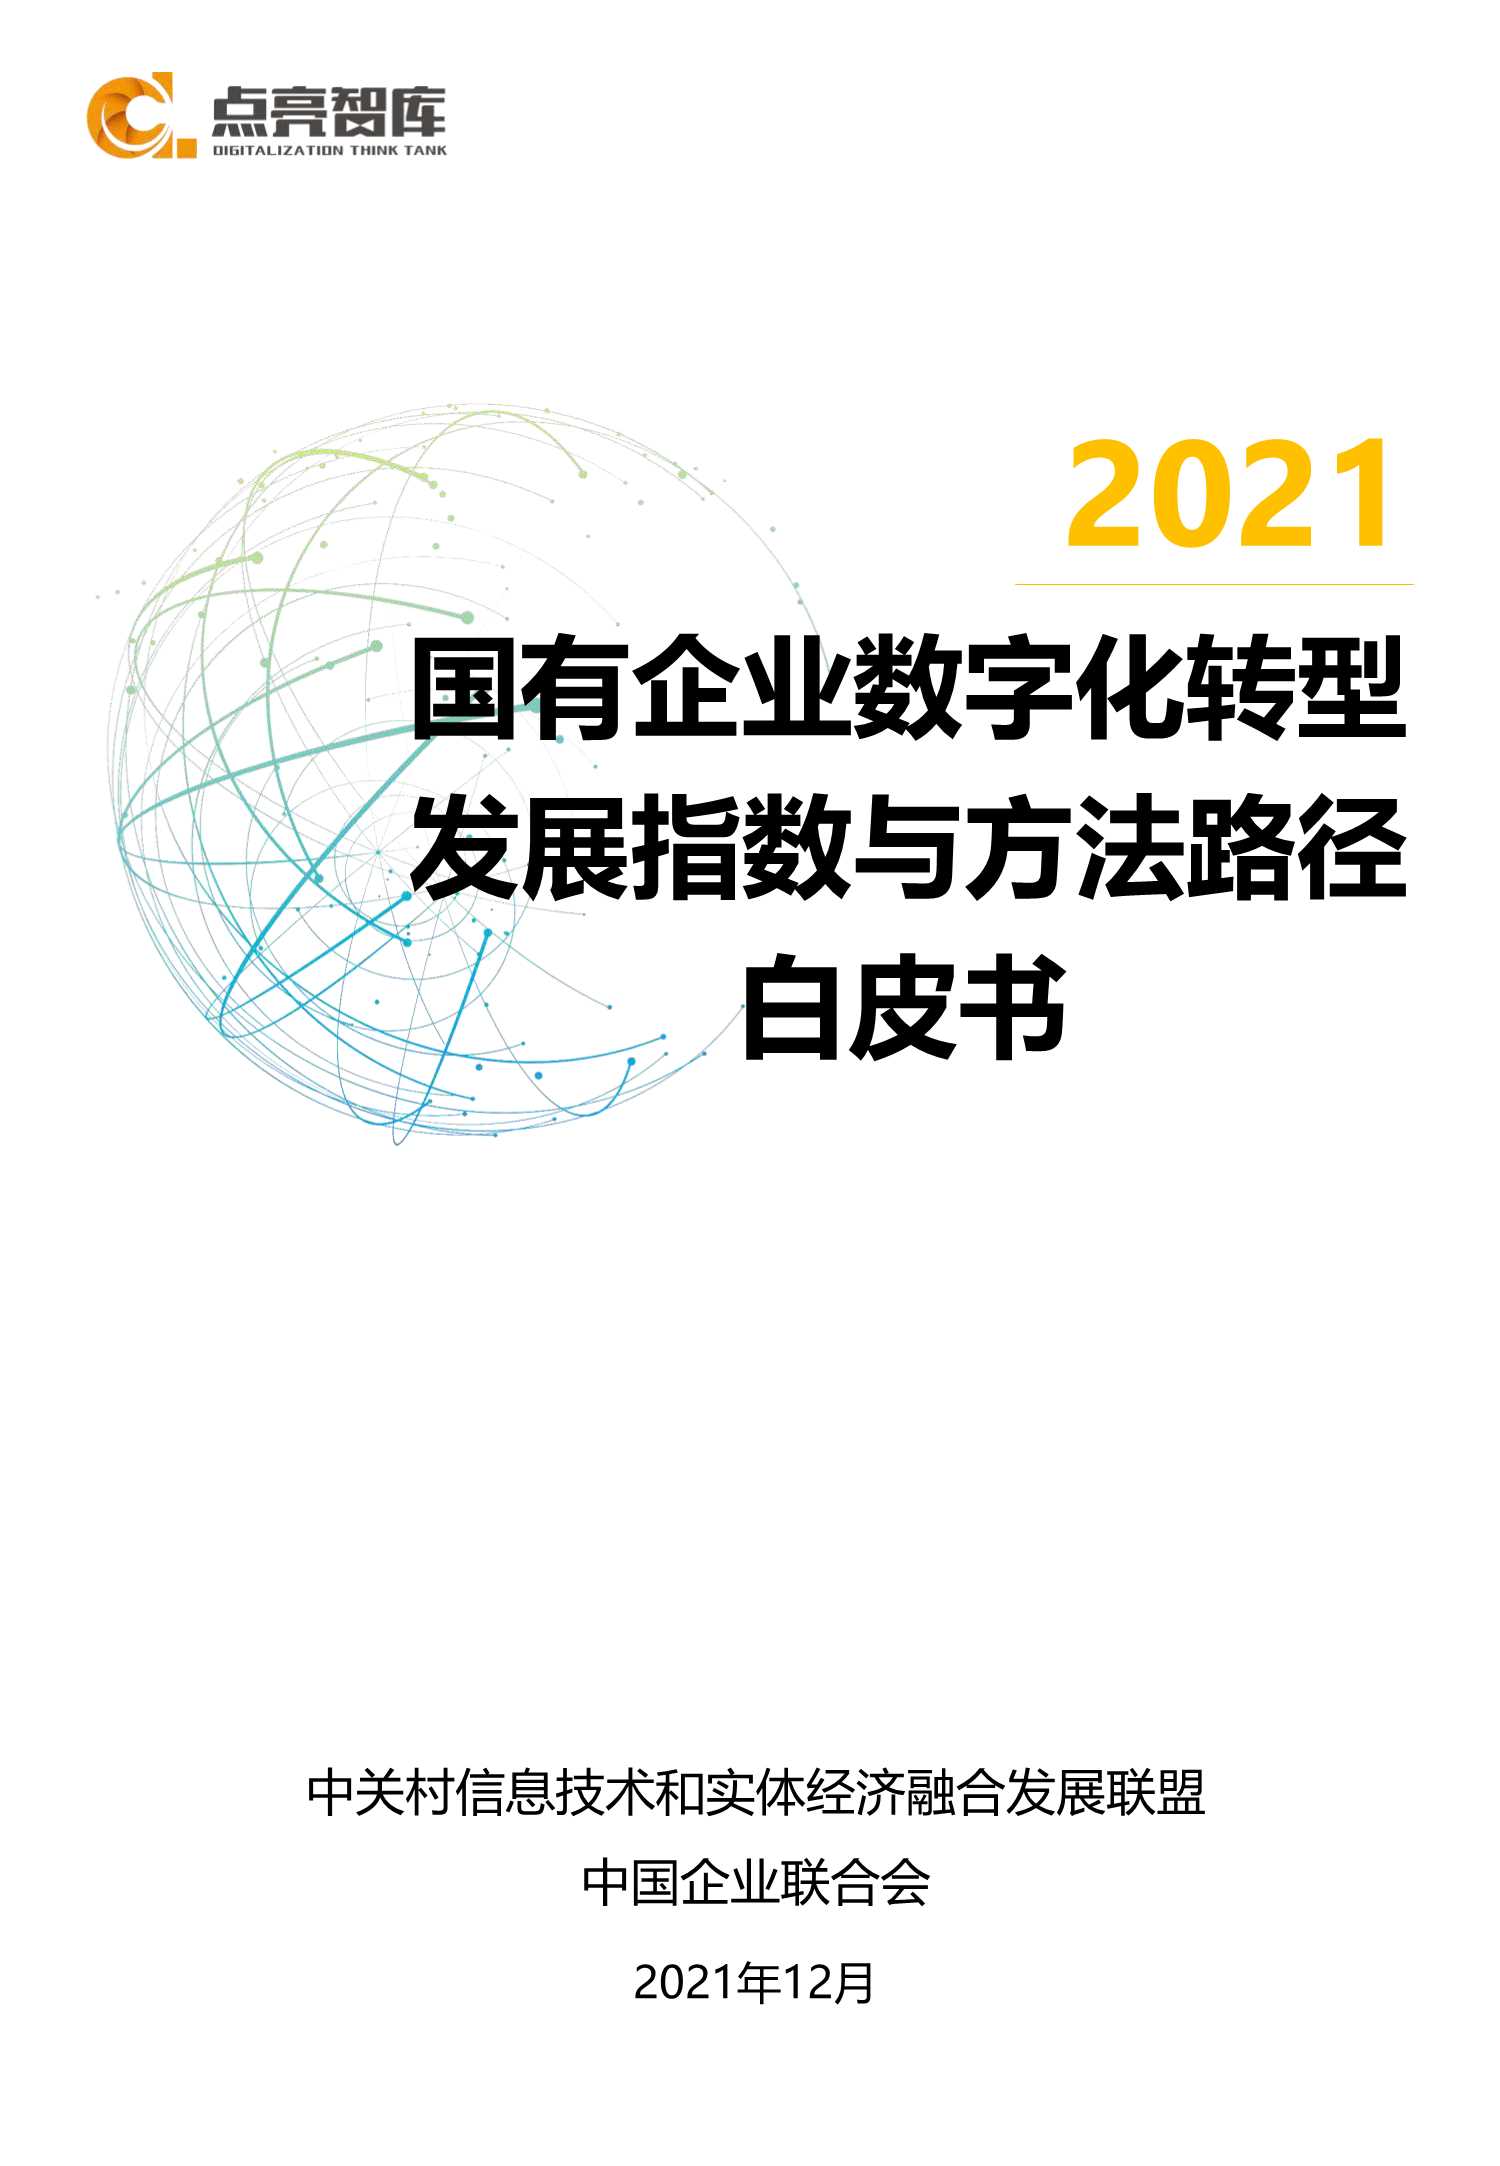 点亮智库-2021国有企业数字化转型指数与方法路径白皮书-2021.12-105页